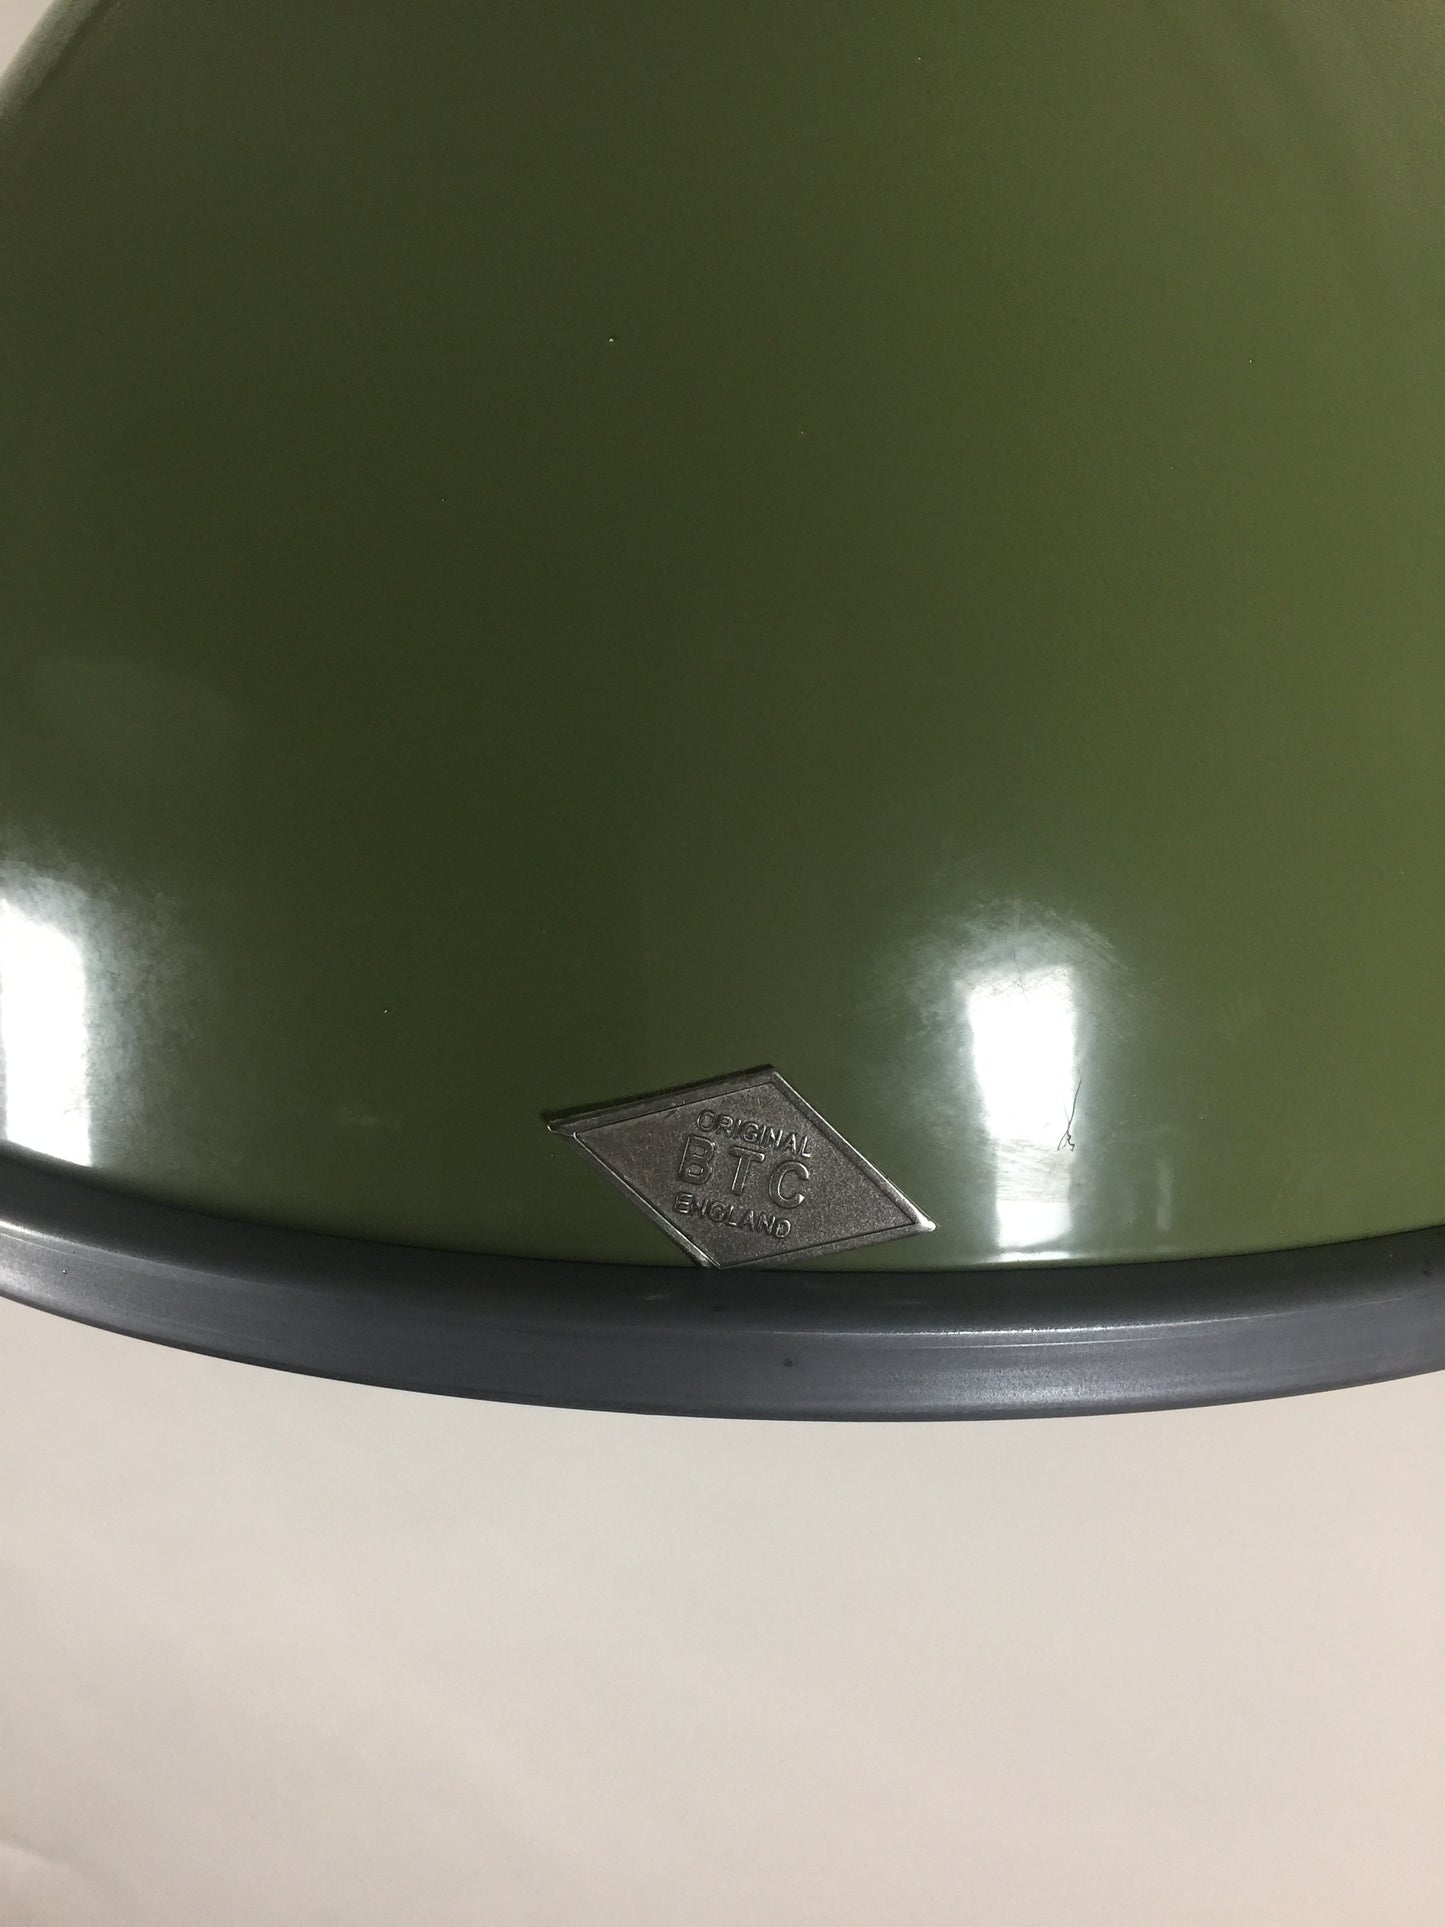 Original BTC lampe -  Titan i flot grøn farve med sandblæst glas